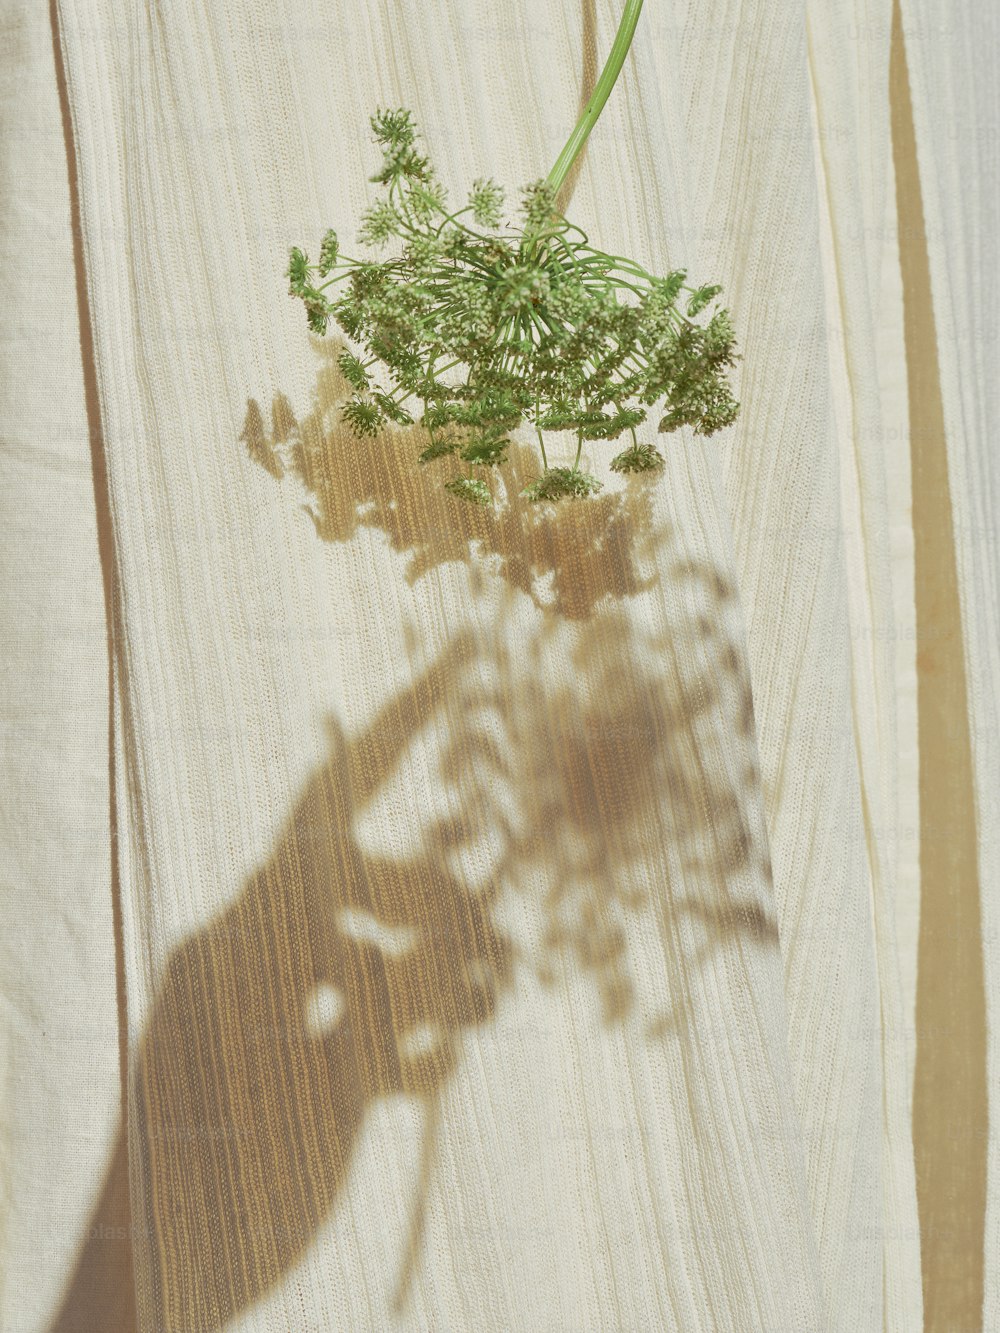 l’ombre d’une plante sur une surface en bois